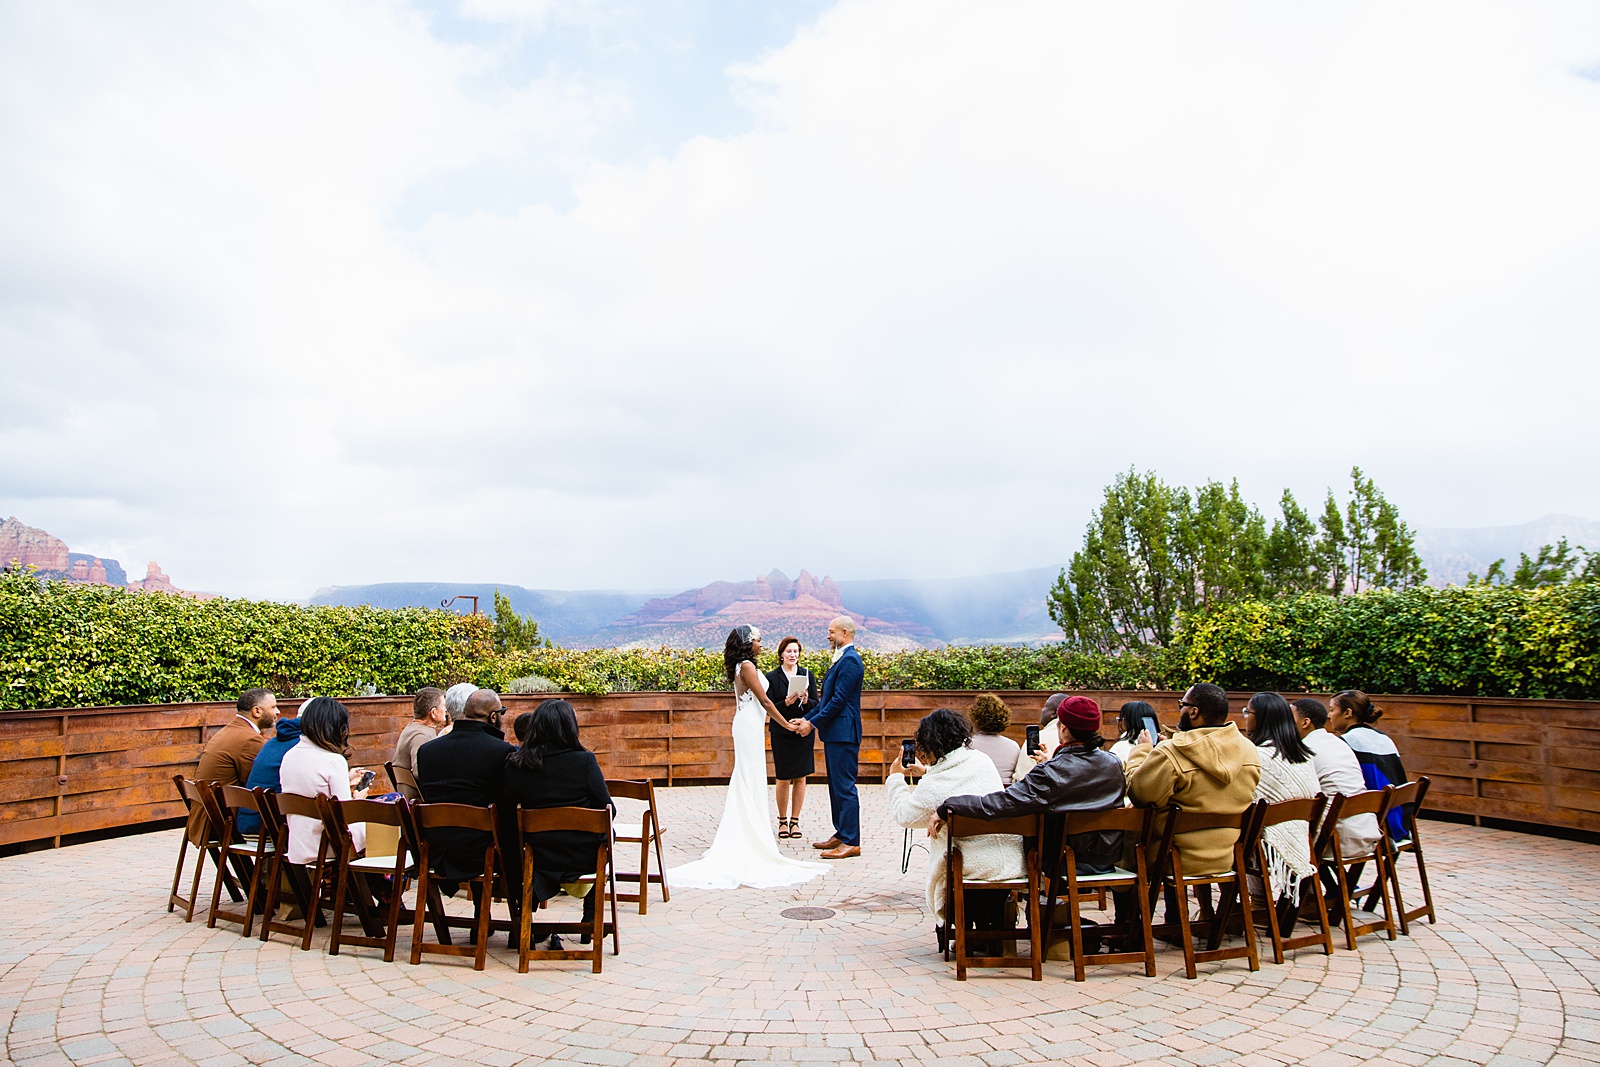 Wedding ceremony at Agave of Sedona by Arizona wedding photographer PMA Photography.